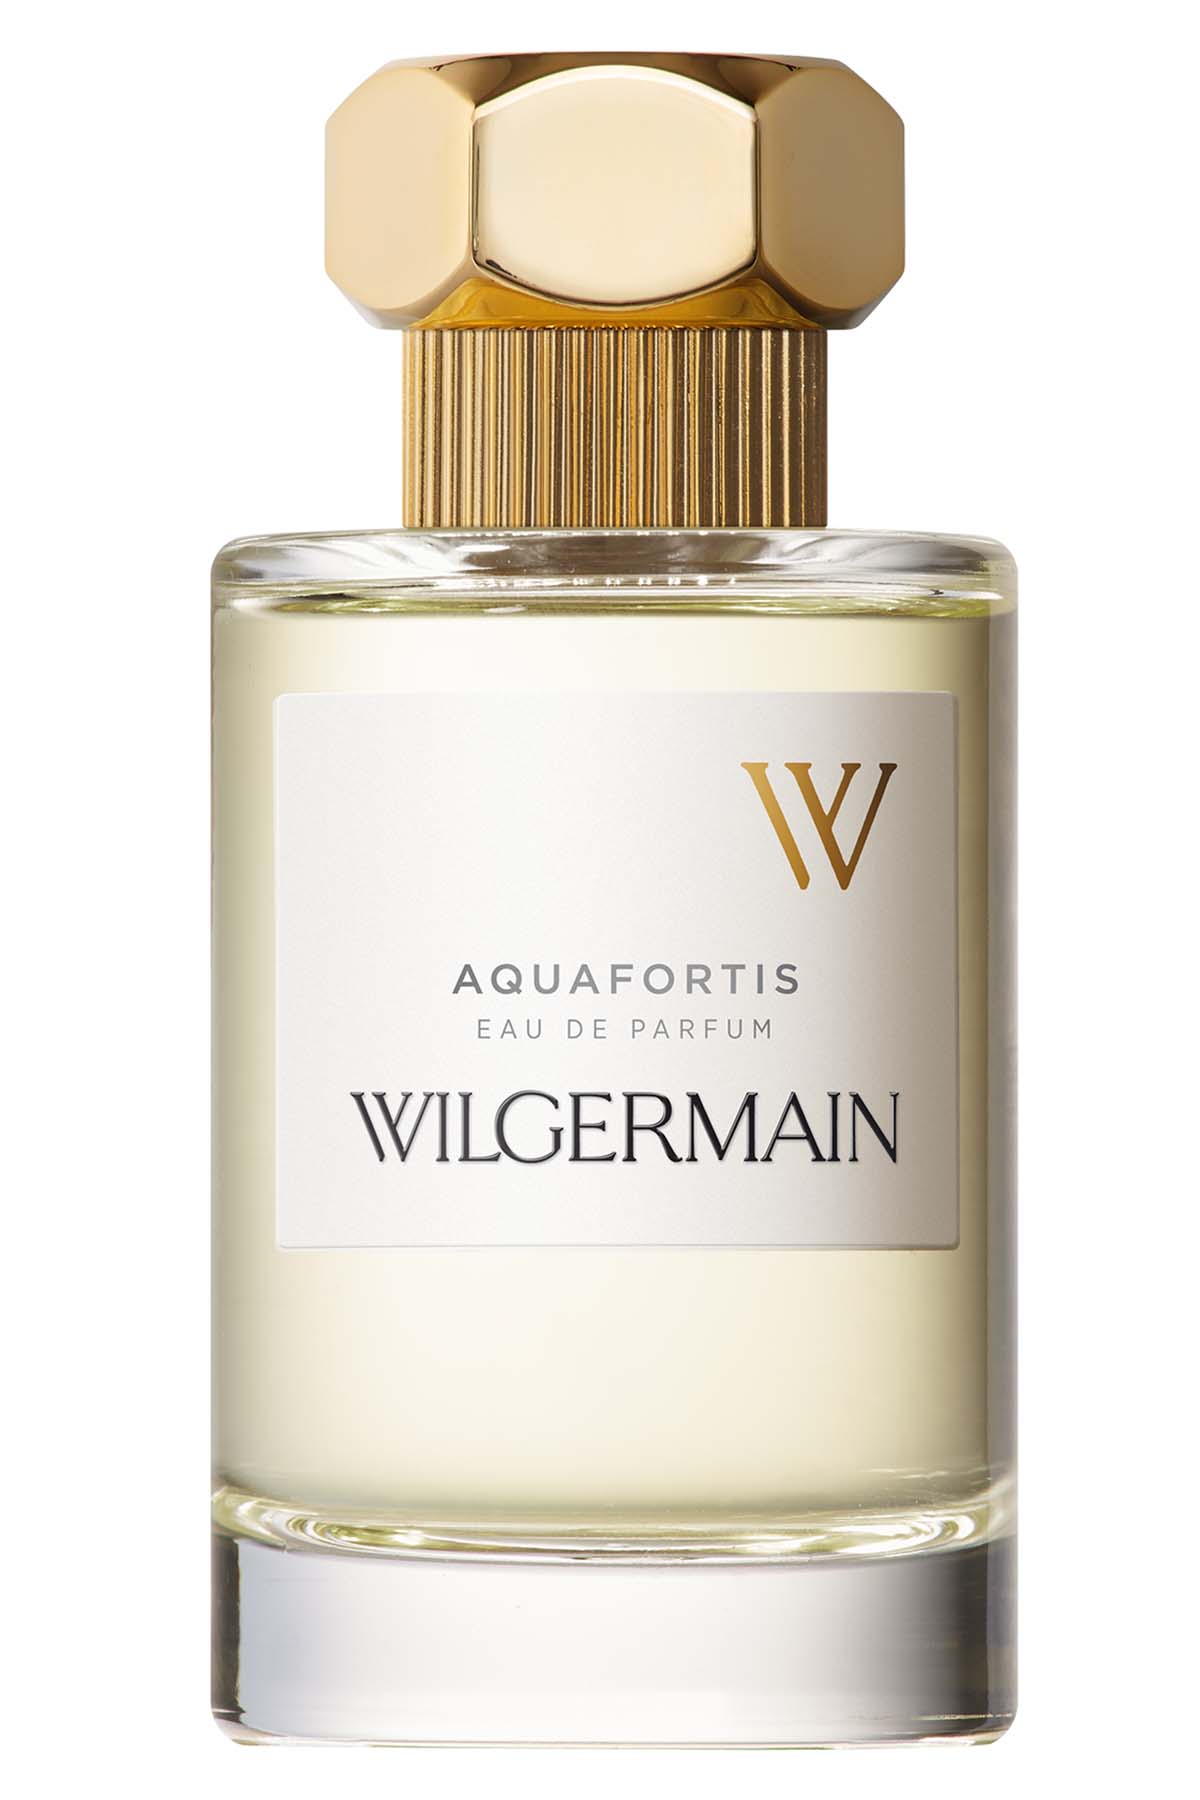 Wilgermain Aquafortis Eau de Parfum